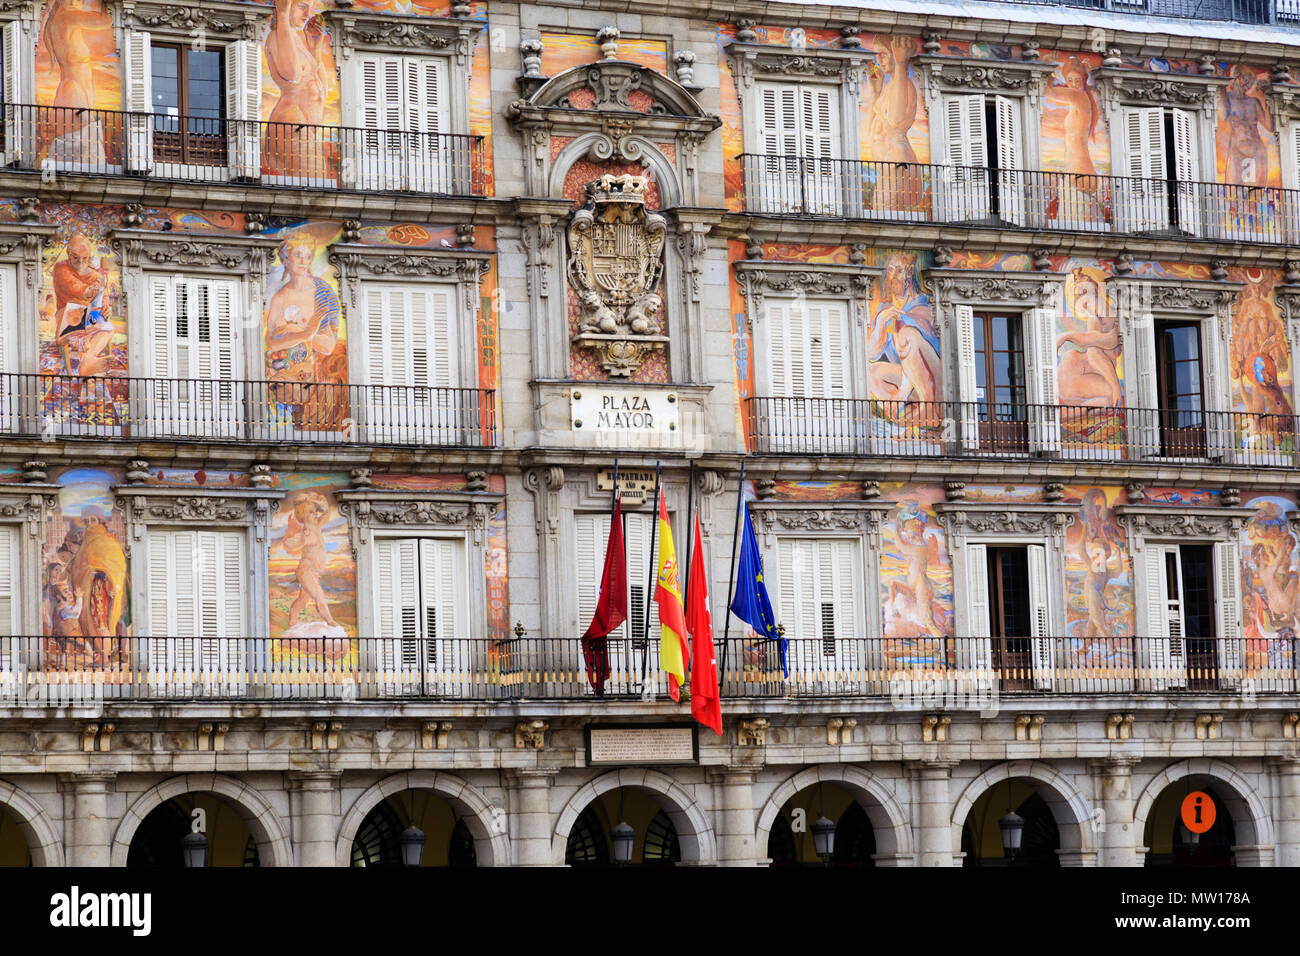 Dettaglio dalla parte anteriore della Casa de la Panaderia, Plaza Mayor, Madrid, Spagna. Maggio 2018 Foto Stock